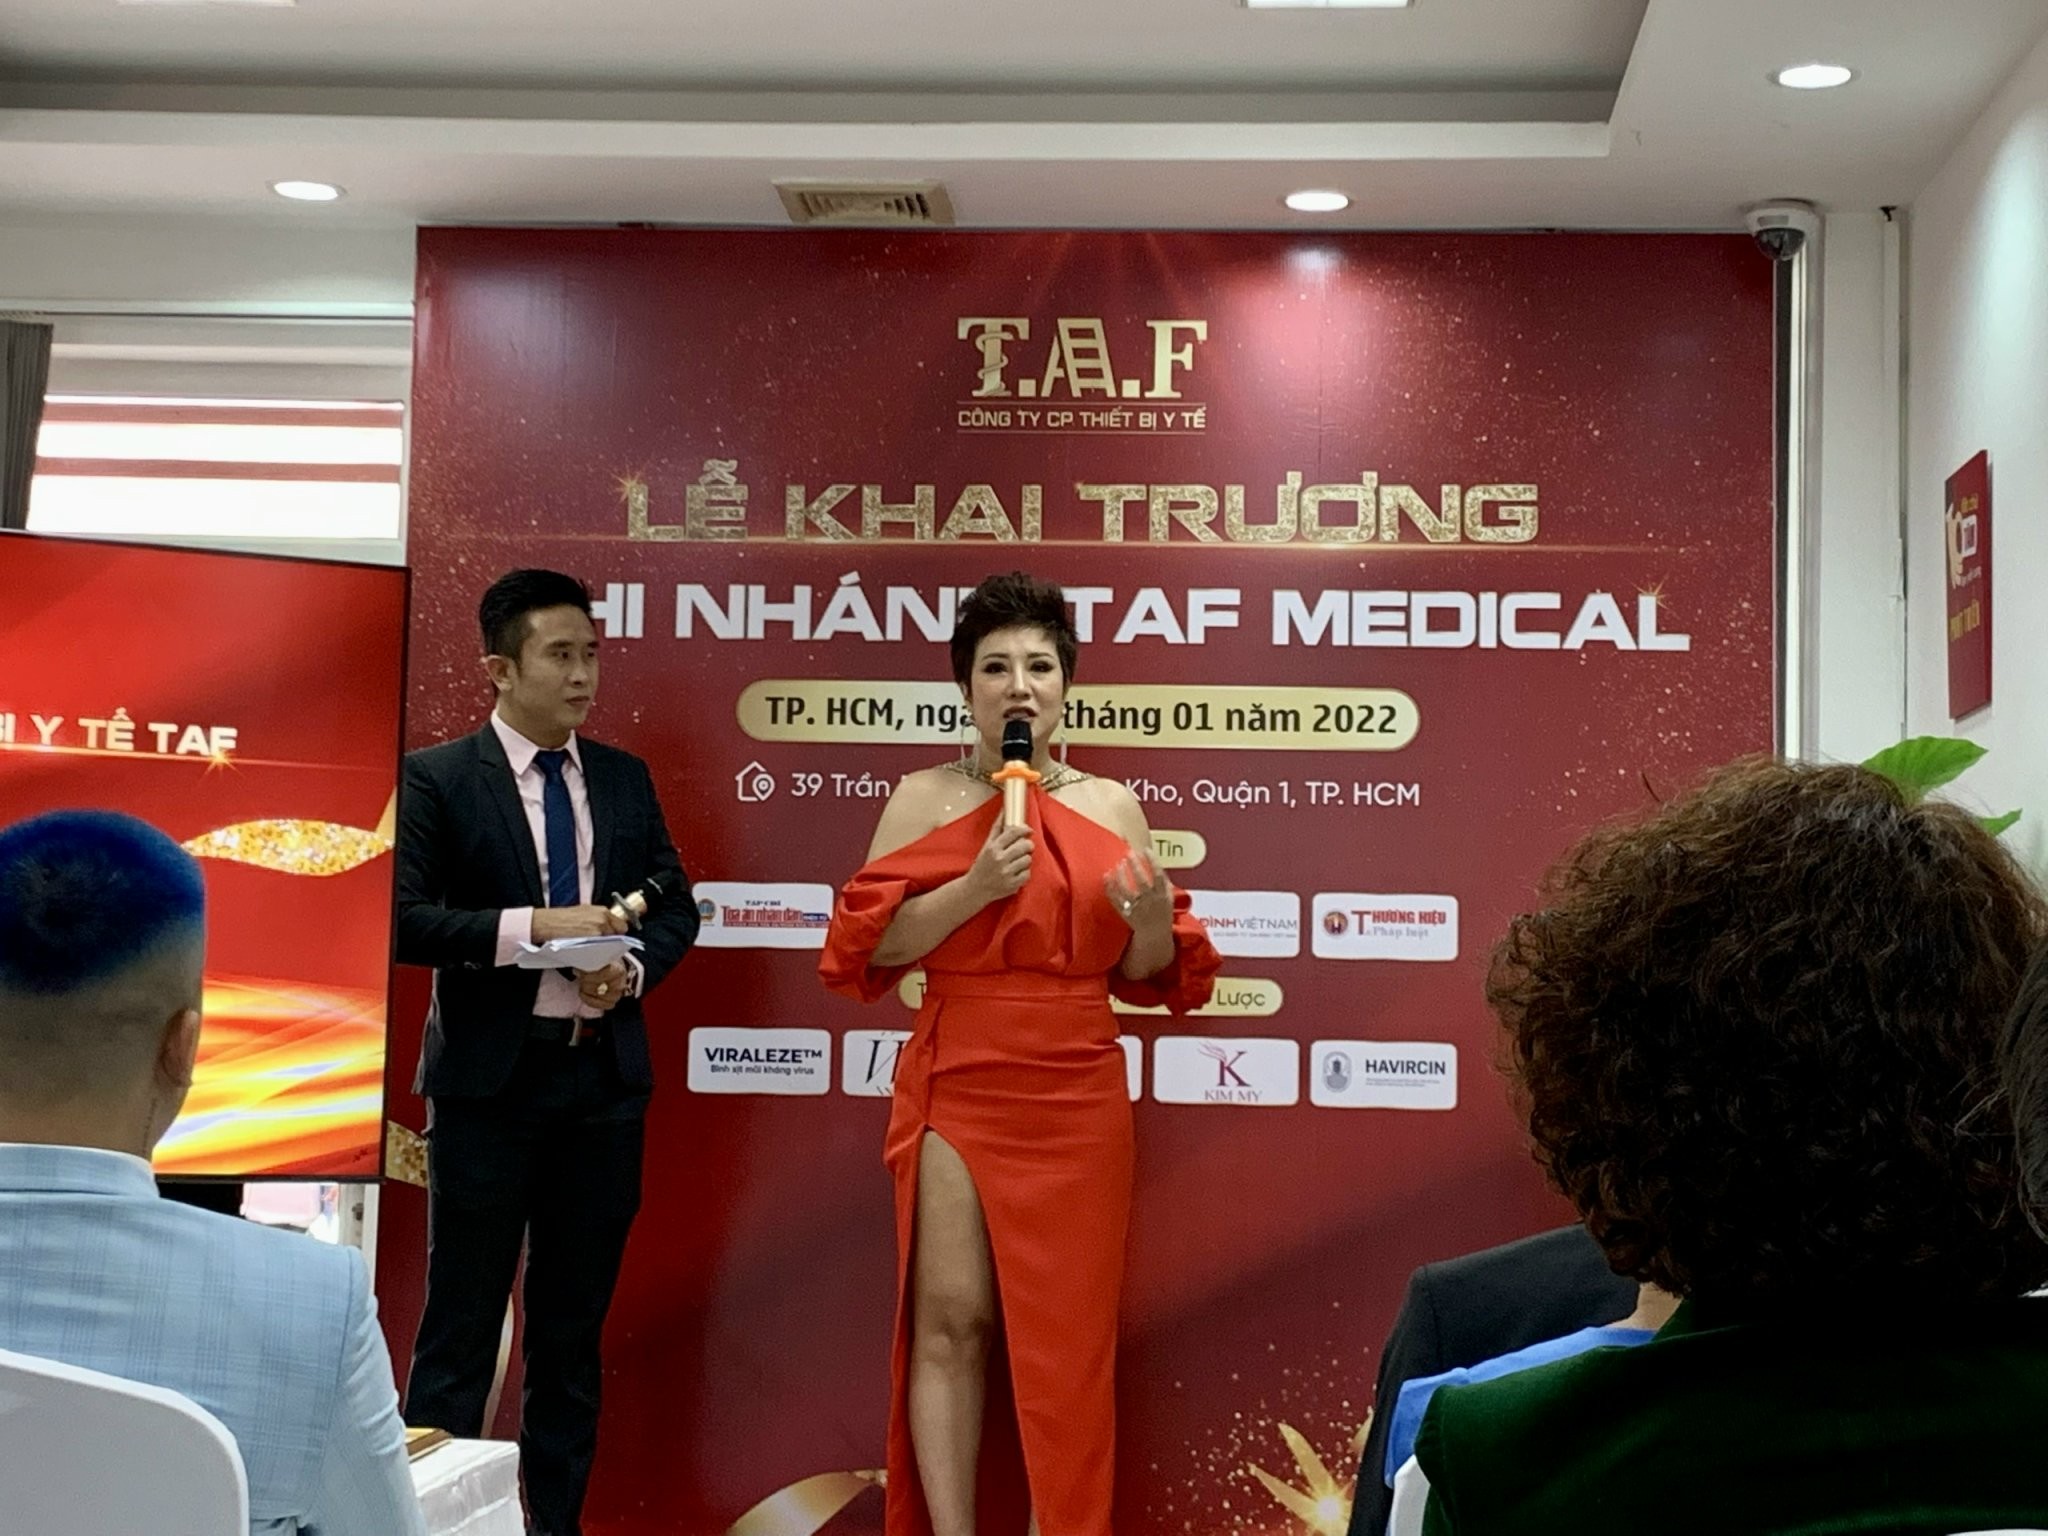 Ca sĩ Doanh nhân Nguyễn Thu trang – Tổng Giám đốc công ty CP thiết bị y tế TAF chia sẻ tại buổi lễ khai trương TAF Medical - chi nhánh TP Hồ Chí Minh.